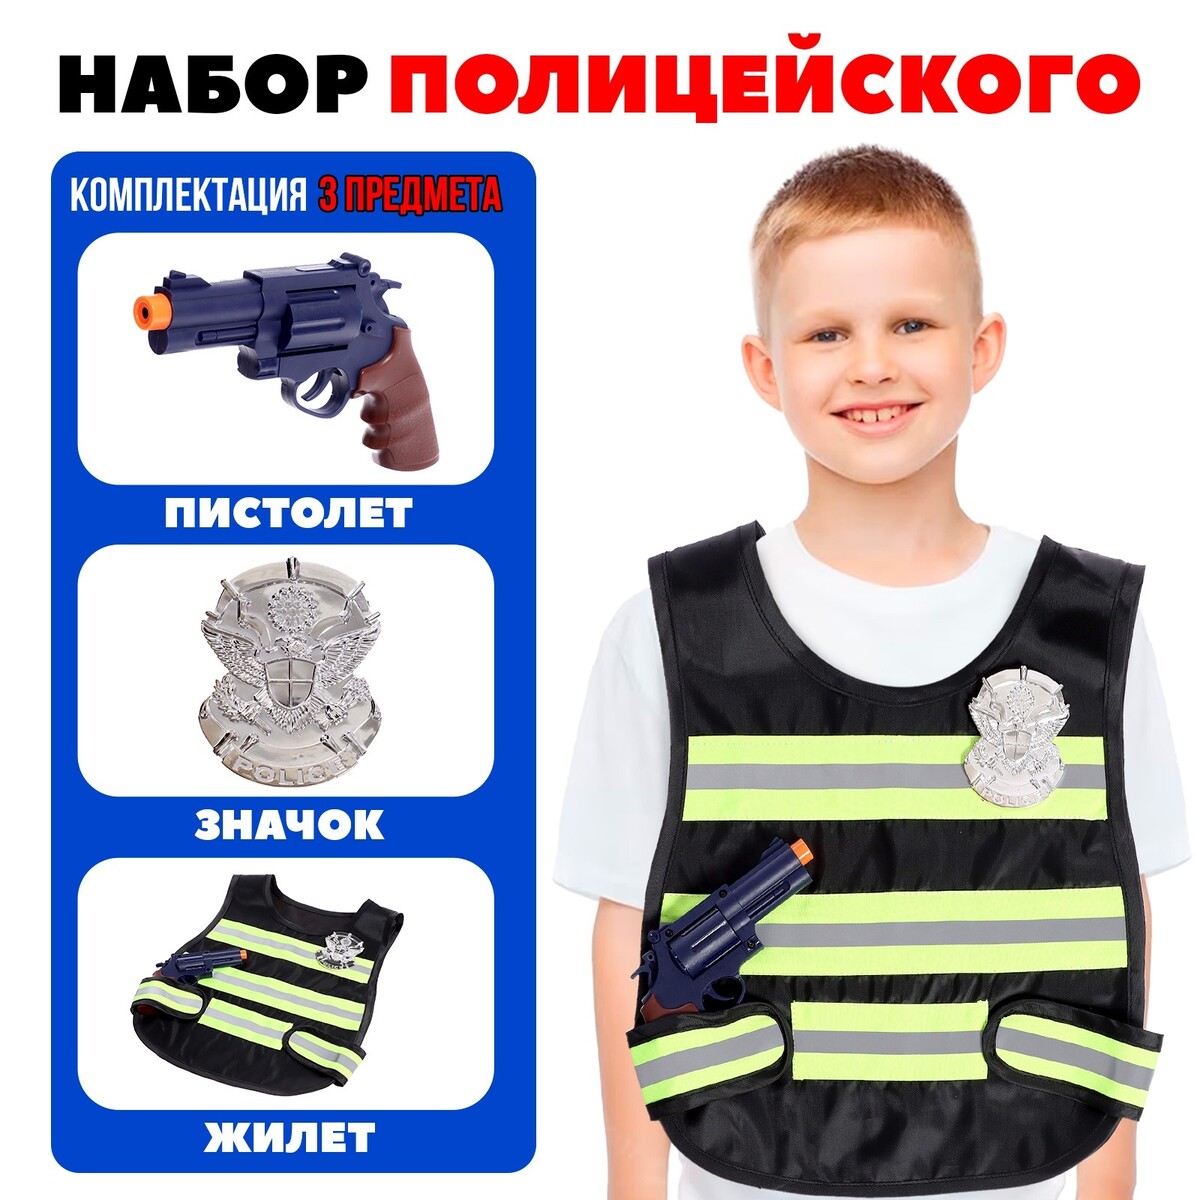 Набор полицейского